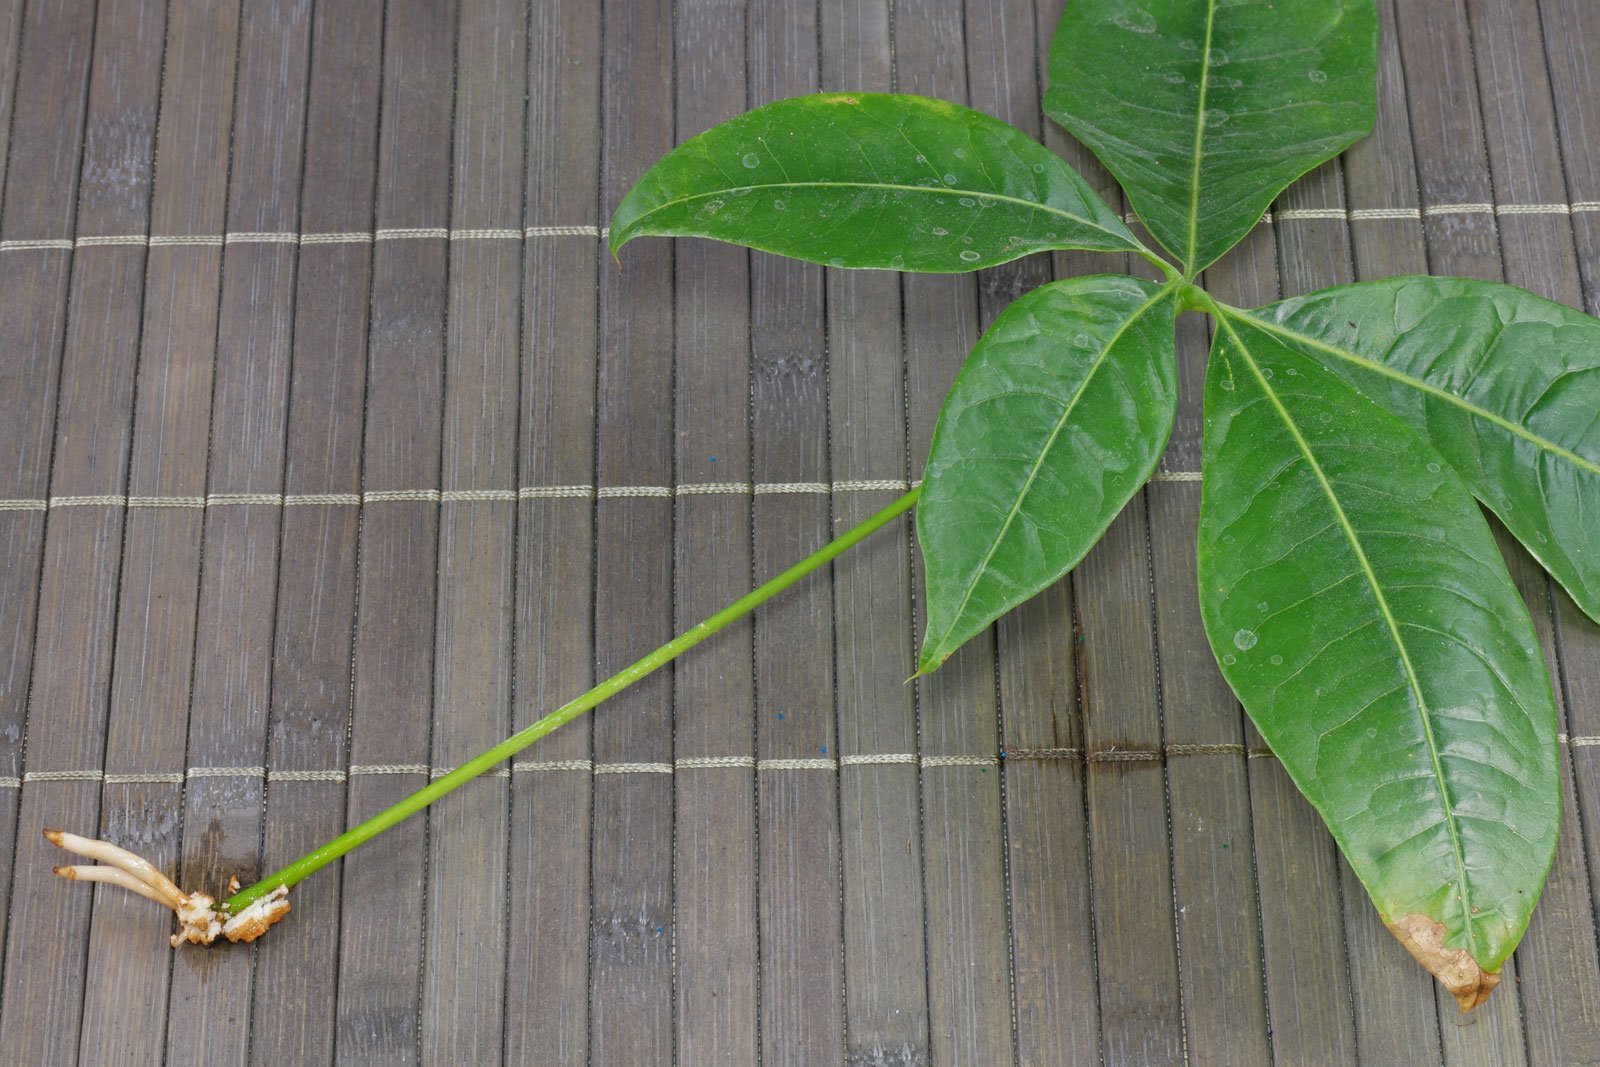 Pachira leaf cutting